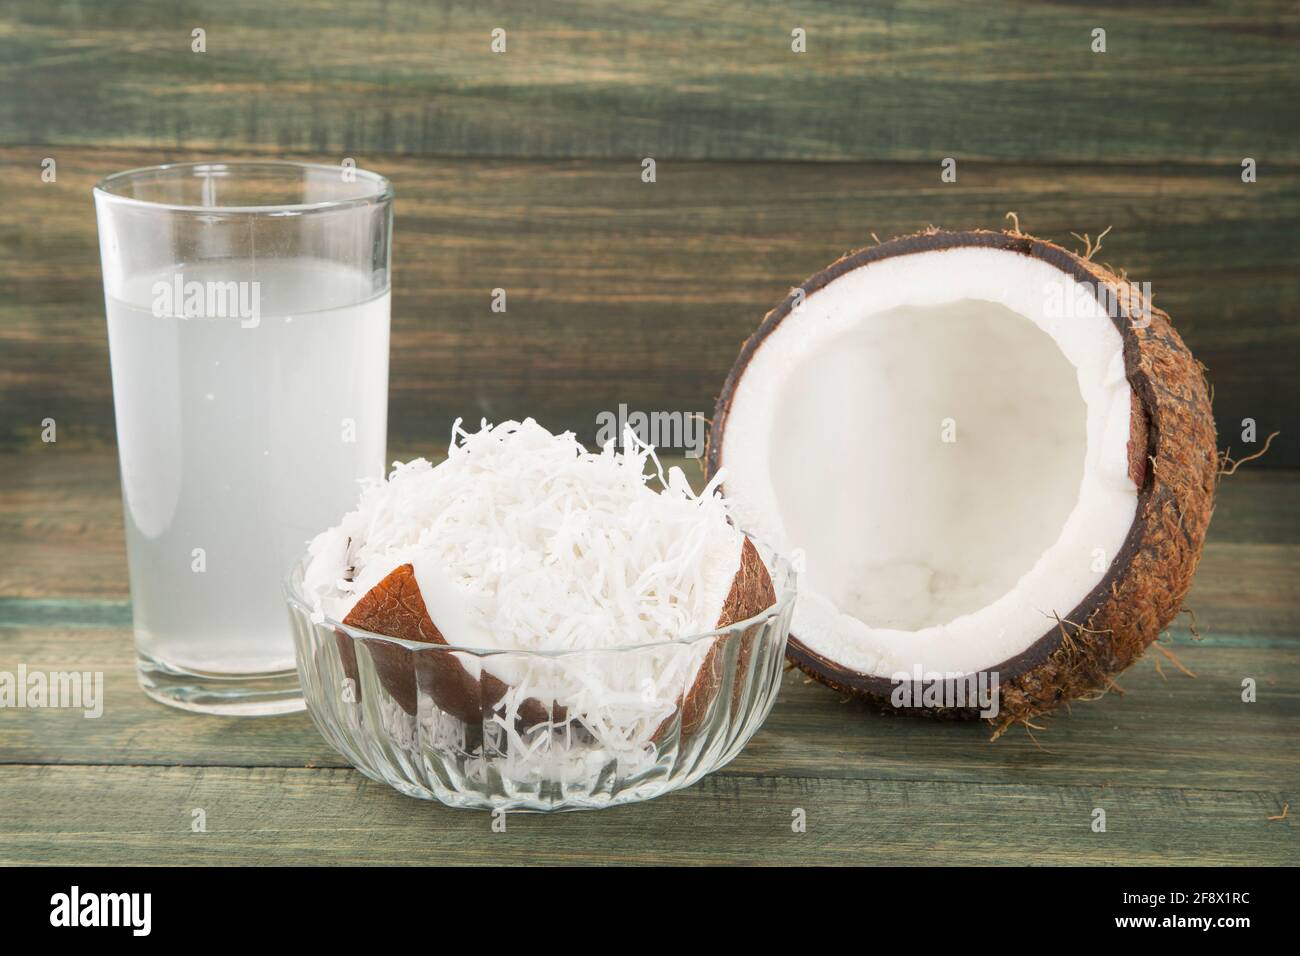 Сколько воды в кокосе. Кокосовая вода и кокосовое молоко. Маленькая коробочка кокосового молока. Кружево кокосовое молоко. Cocos nucifera (Coconut) Oil.